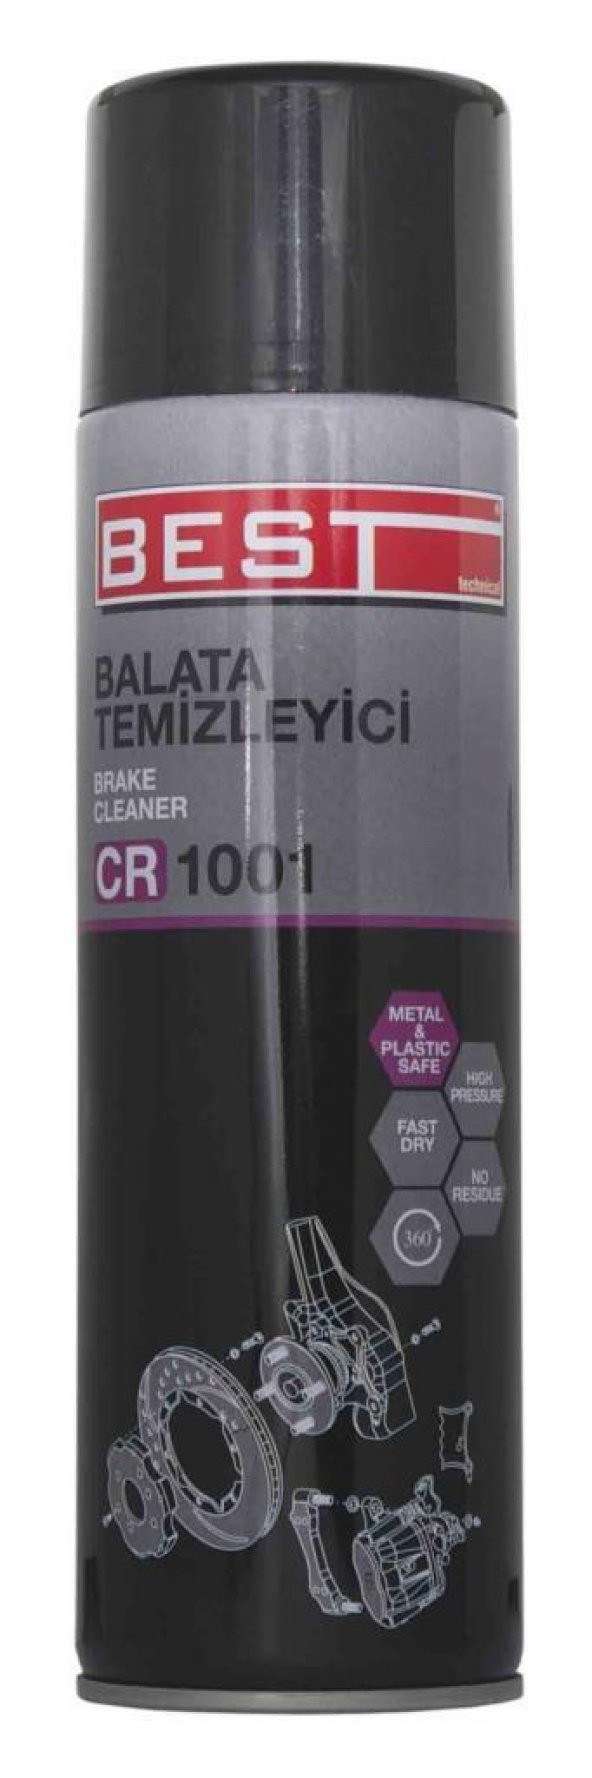 Best Balata Temizleyici 500Ml